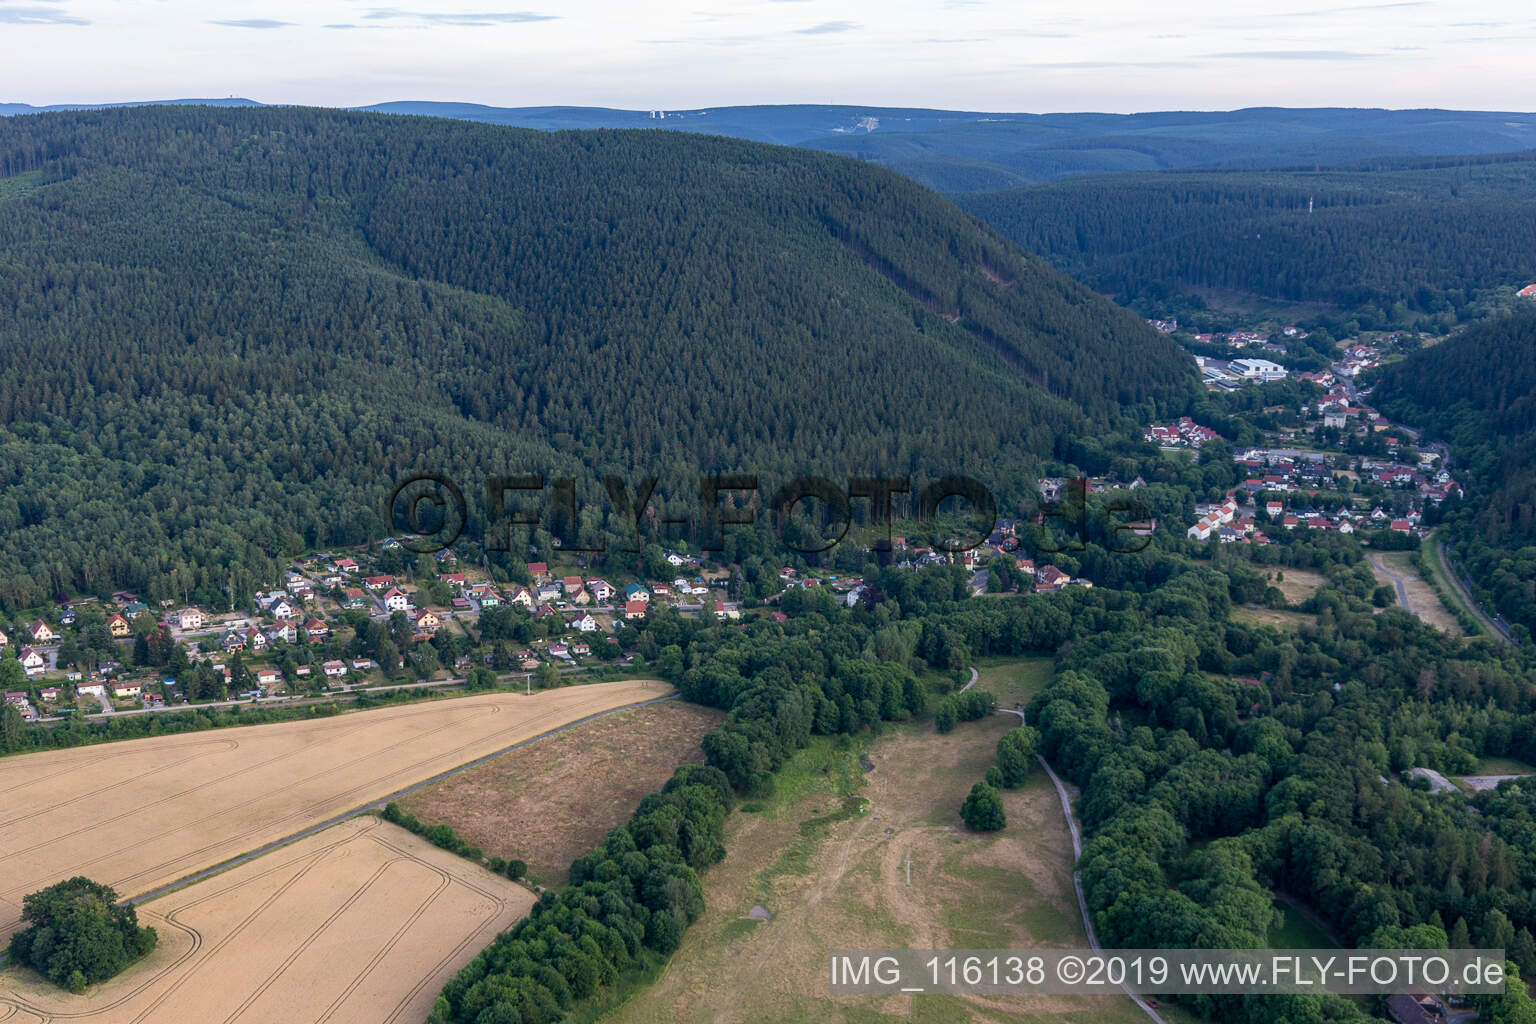 Vue aérienne de Luisenthal dans le département Thuringe, Allemagne